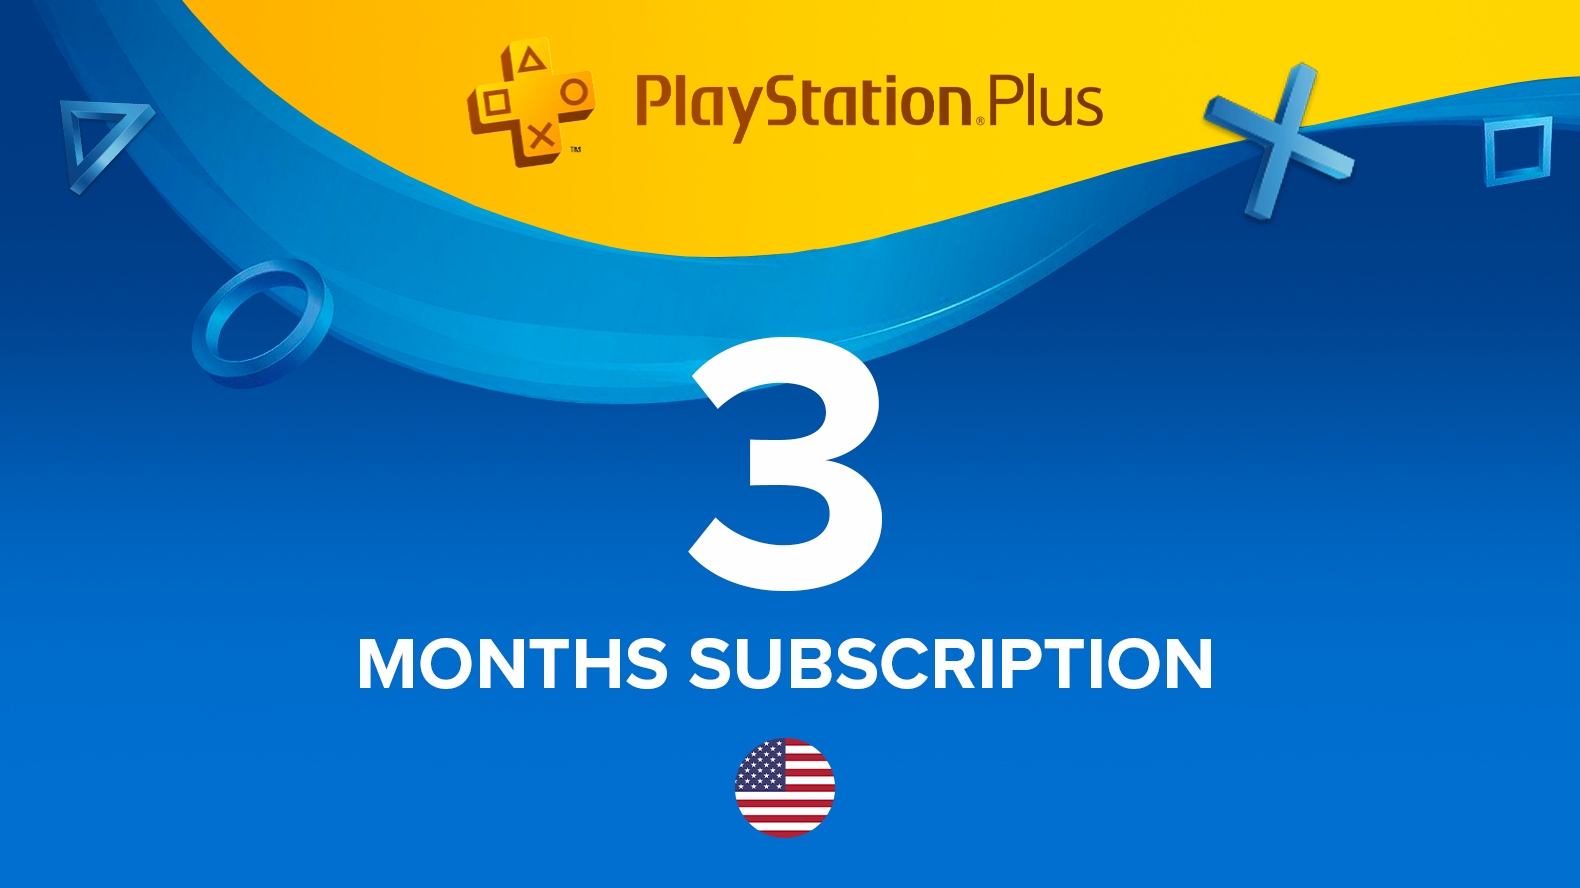 aktivt komedie Analytisk Køb PlayStation Plus - Abonnement i 90 dage Playstation Store